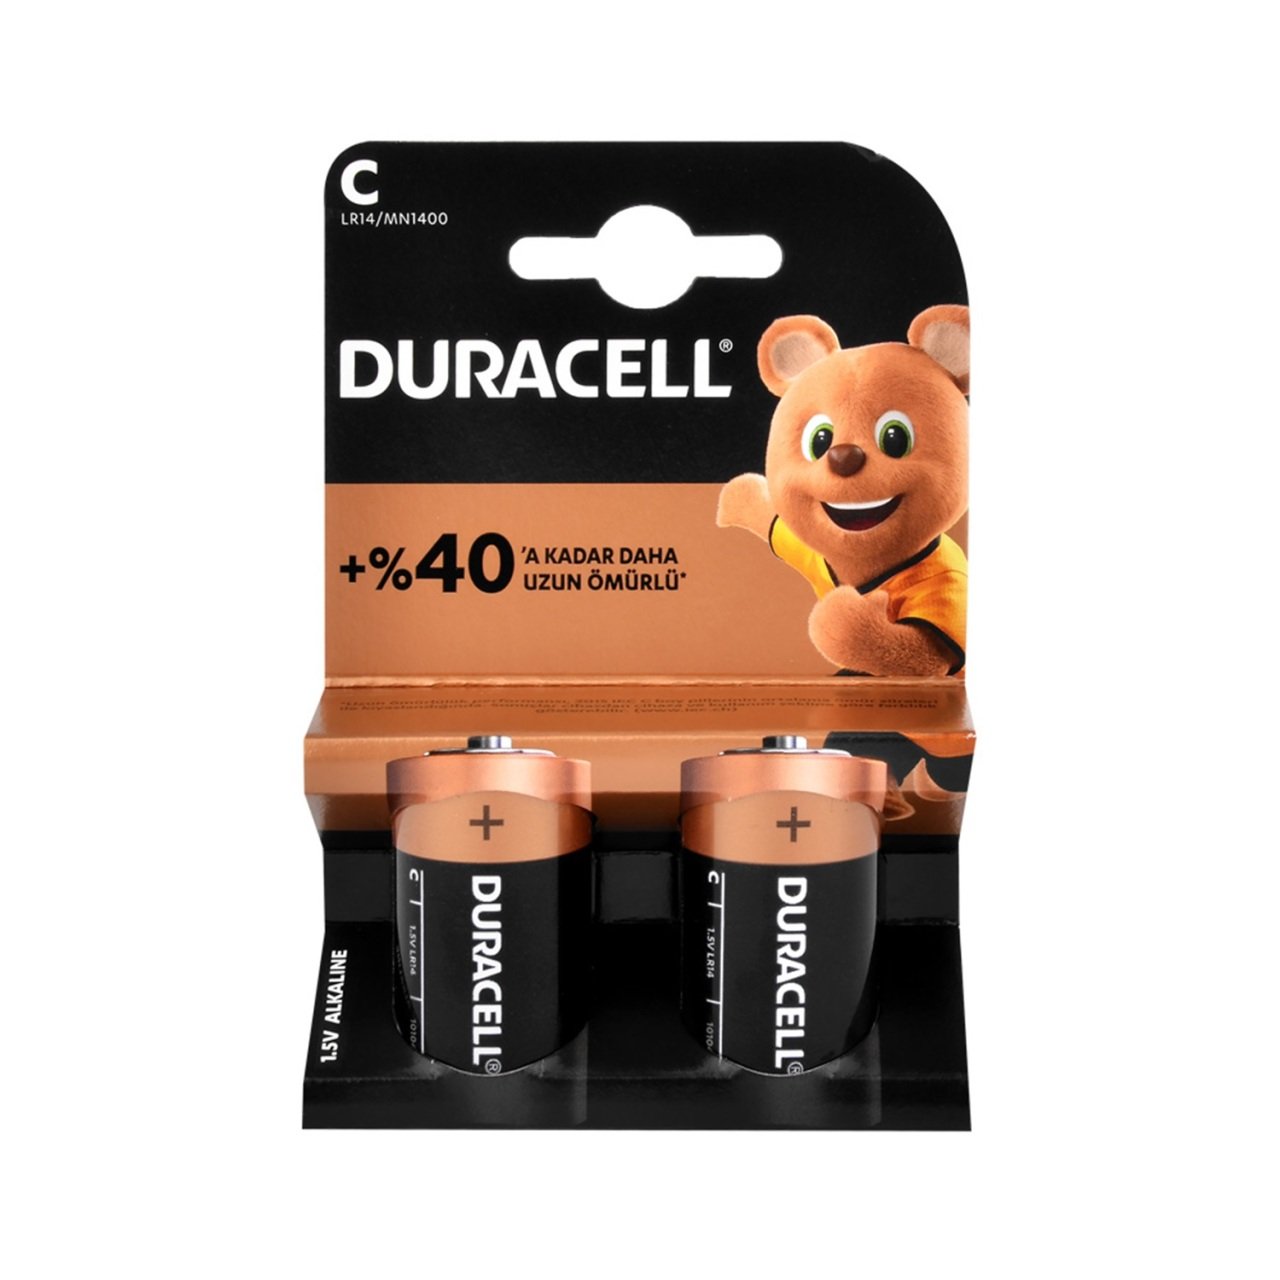 Duracell C Orta Boy Pil 2'li Paket